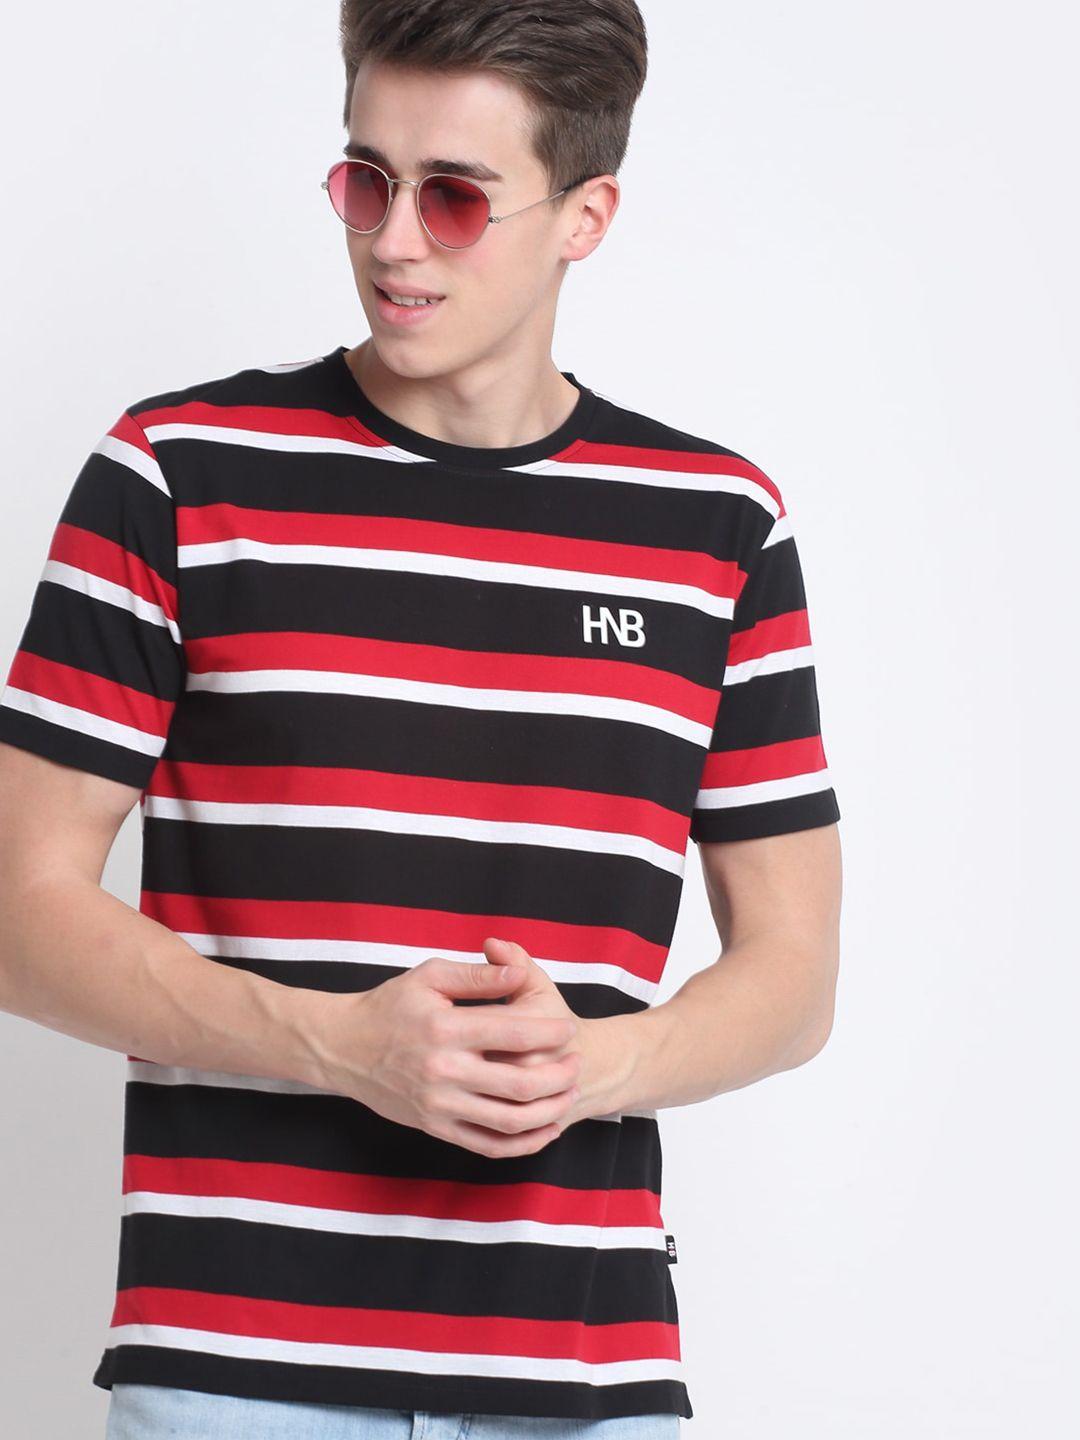 harbor-n-bay-men-red-striped-applique-t-shirt